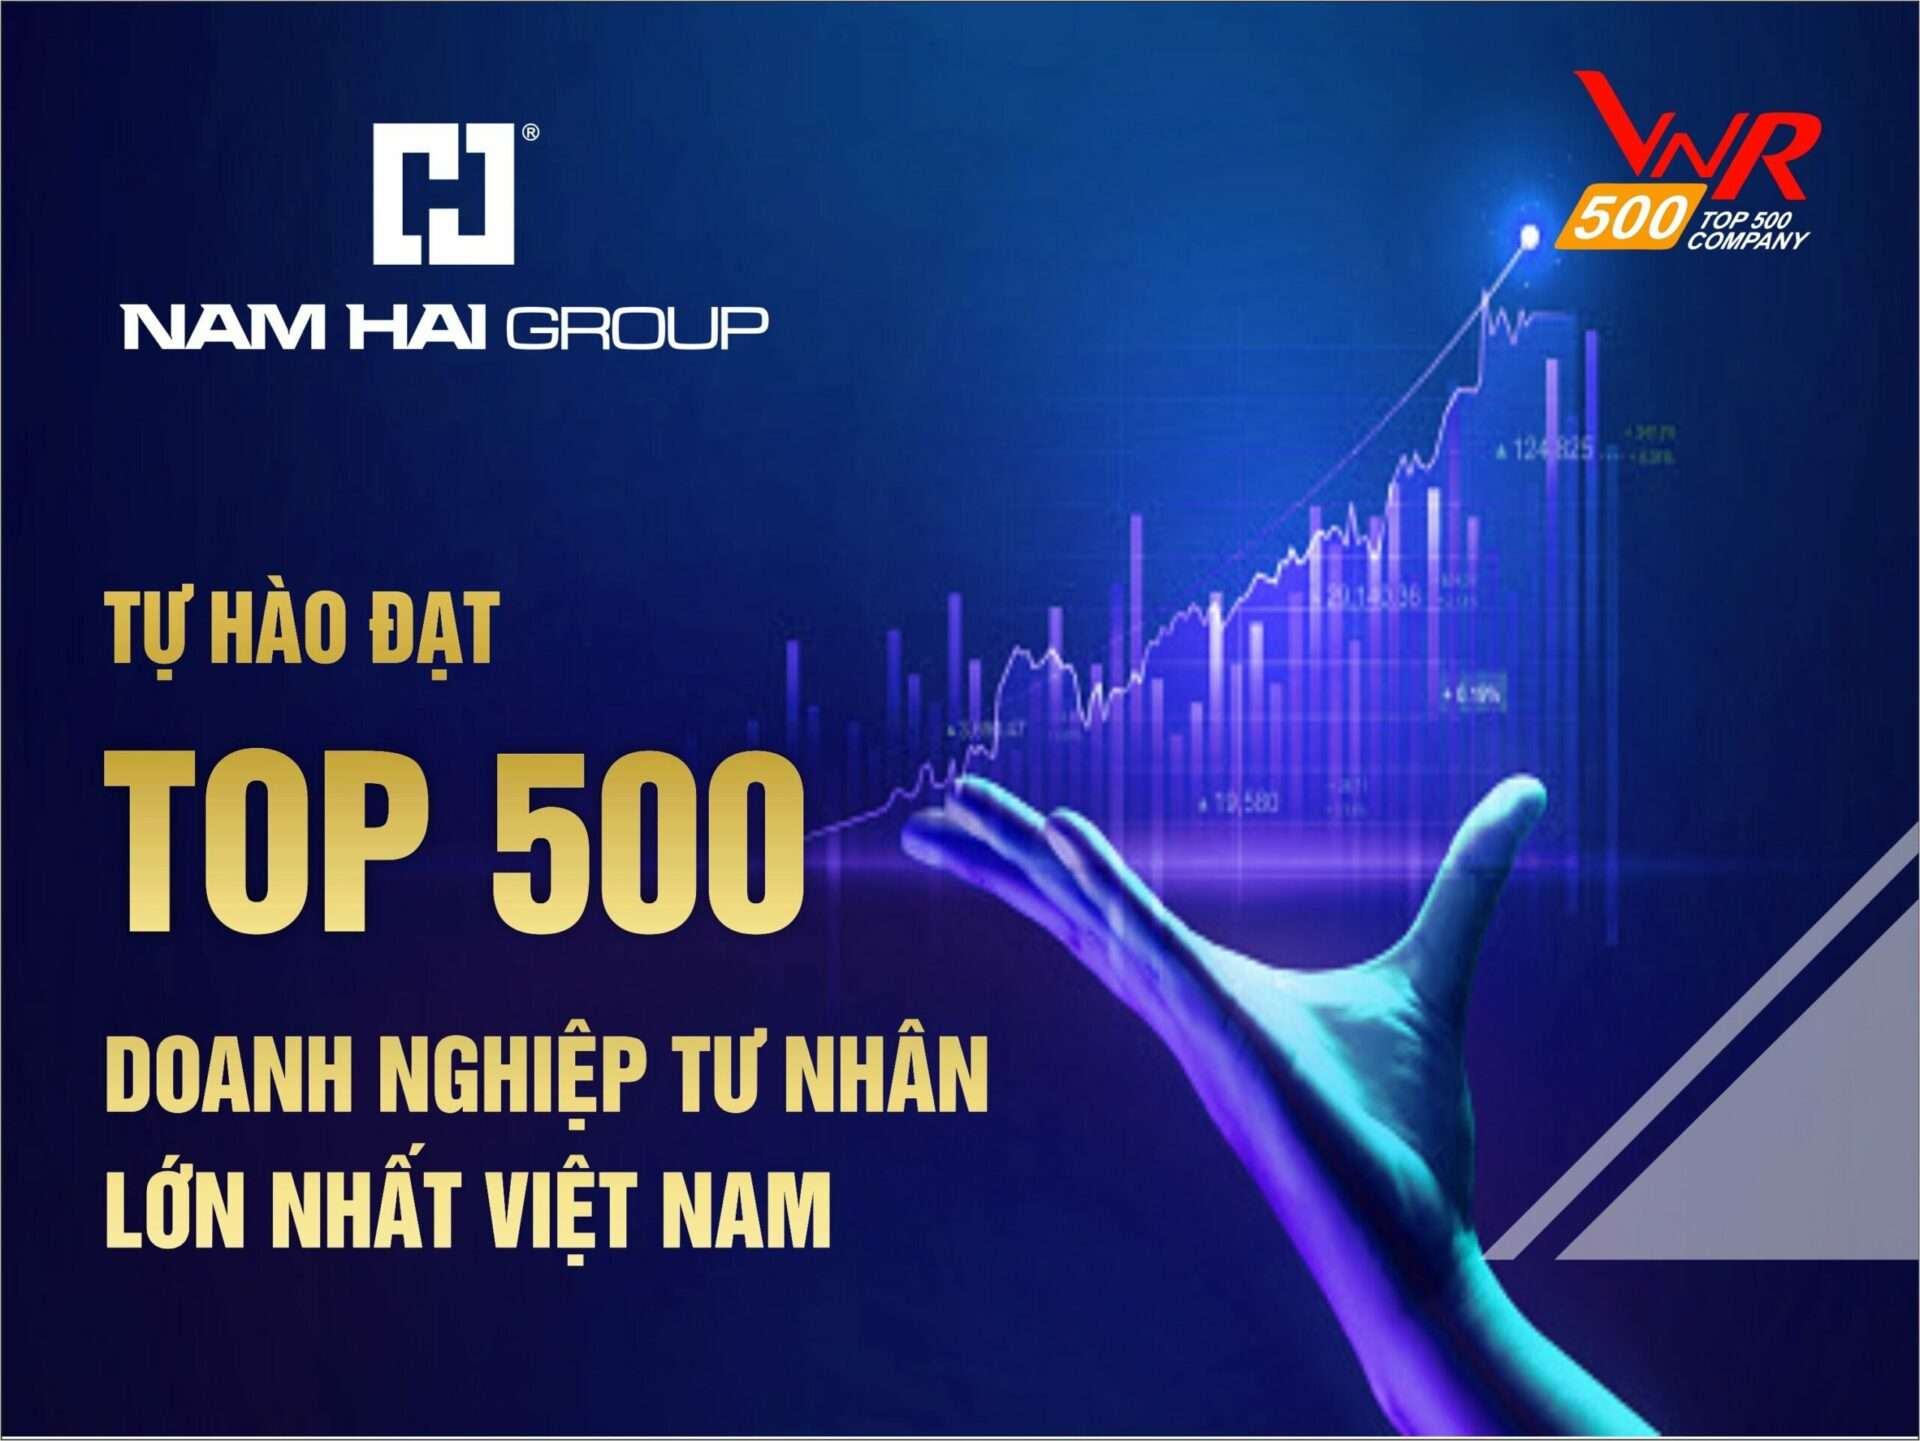 NAM HẢI GROUP - TỰ HÀO ĐẠT TOP 500 DOANH NGHIỆP TƯ NHÂN LỚN NHẤT VIỆT NAM | Nam Hai Group